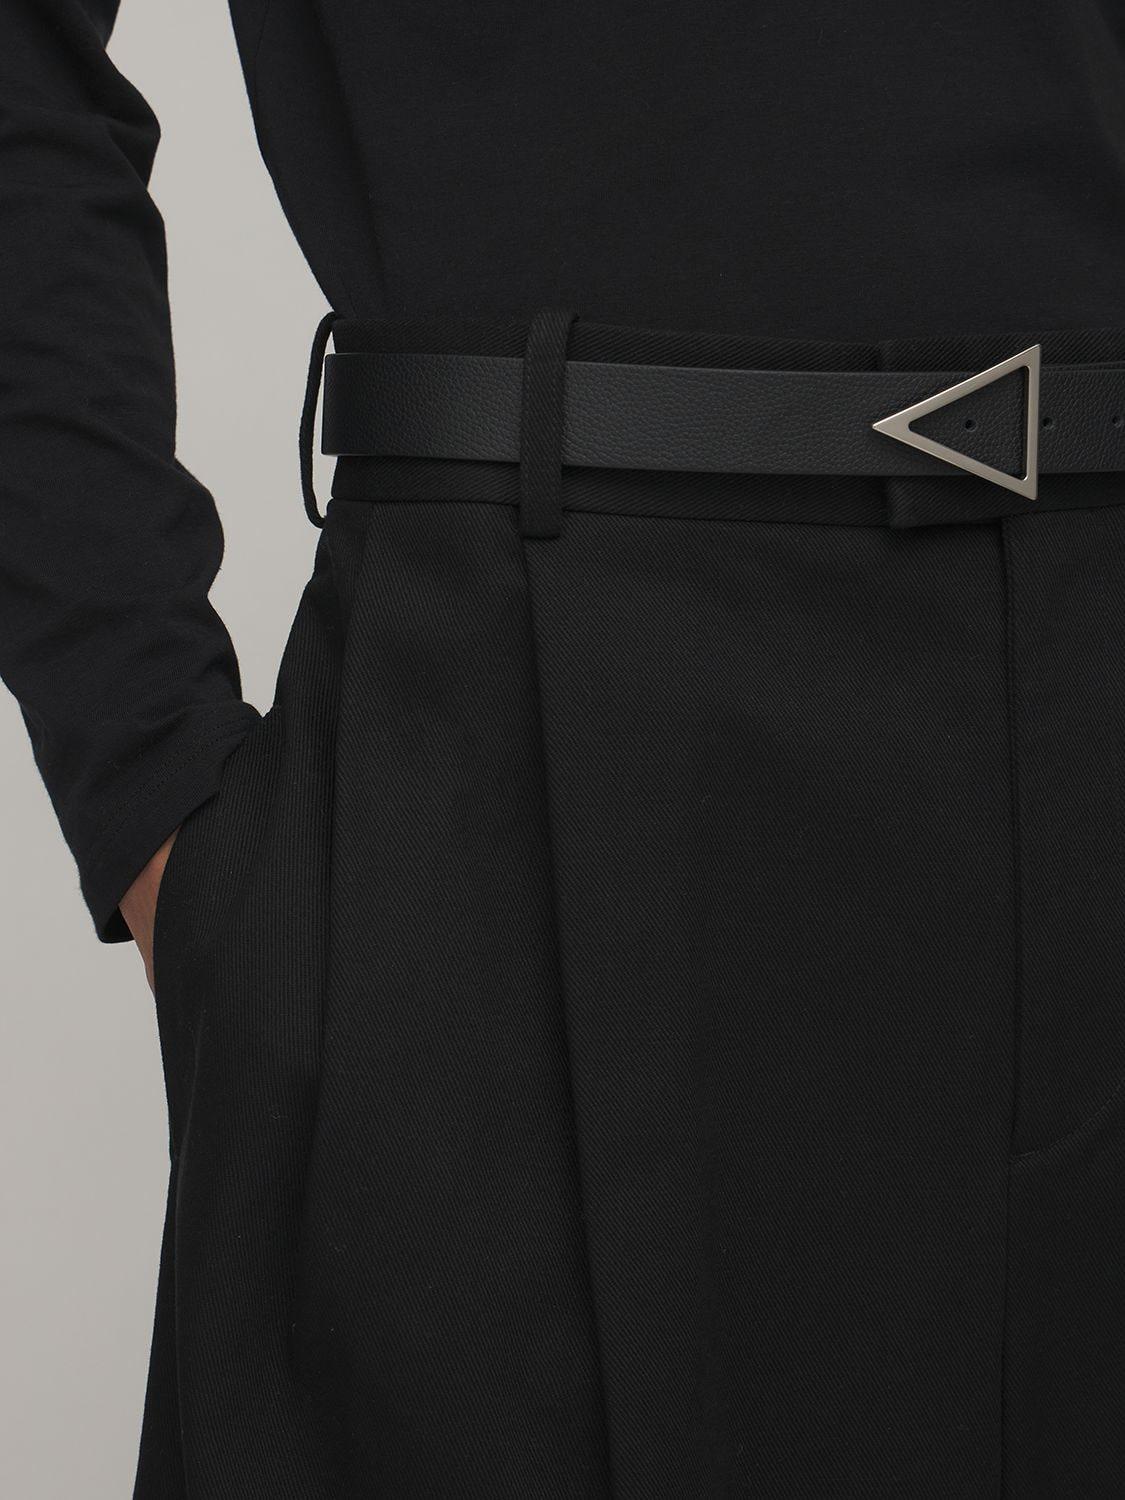 Bottega Veneta 3cm Triangle Buckle Leather Belt in White for Men | Lyst